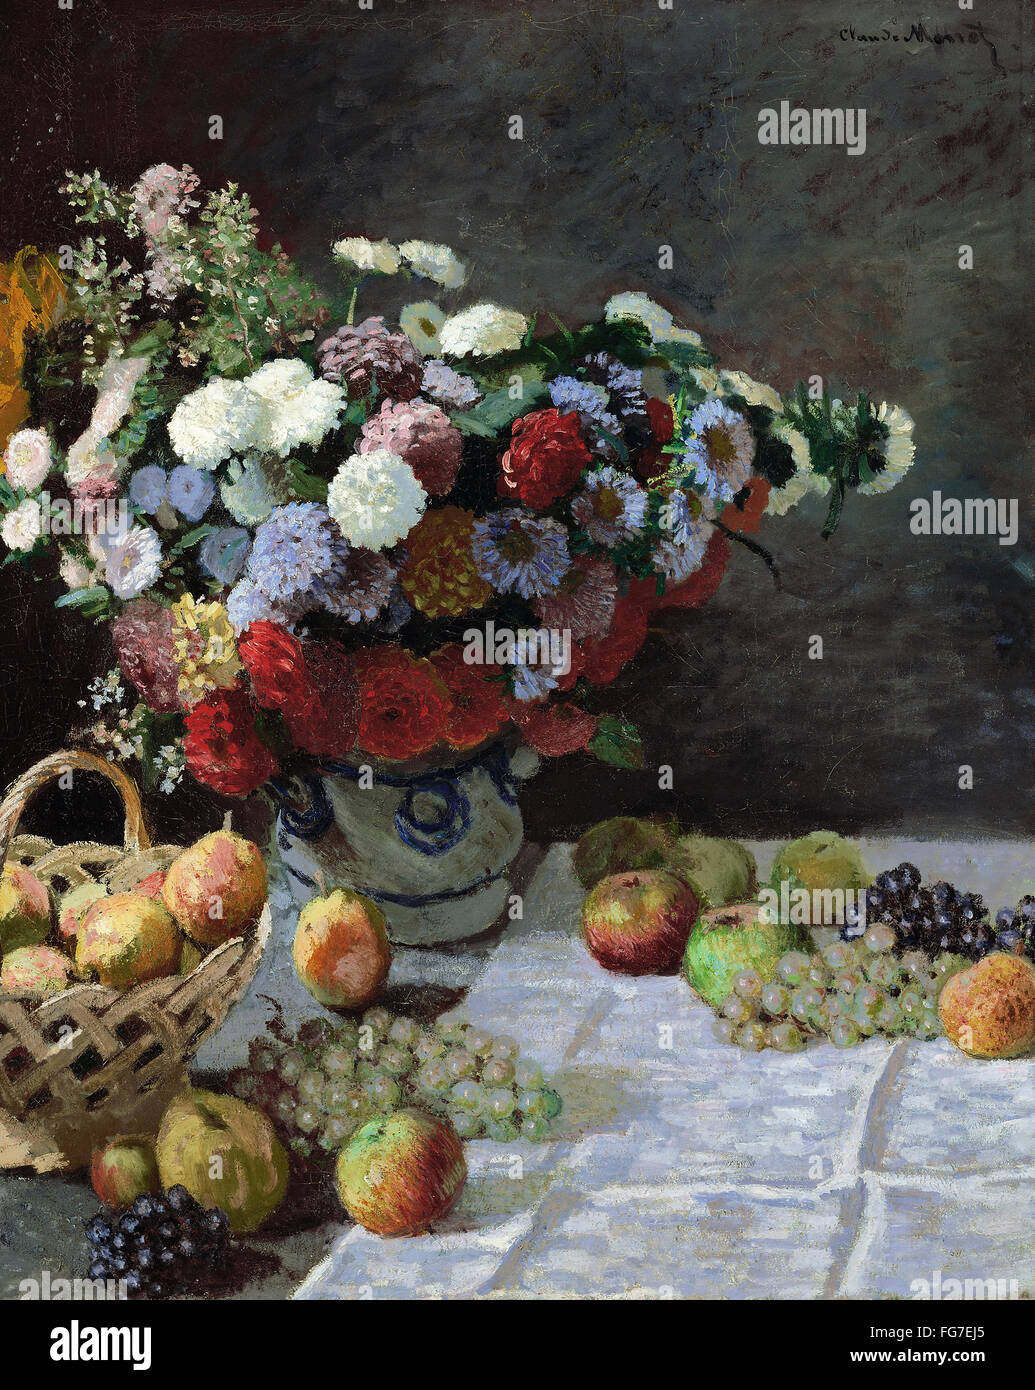 MONET: ancora in vita, 1869. /N'Sfino alla vita con fiori e frutta.", pittura a olio, Claude Monet, 1869. Foto Stock